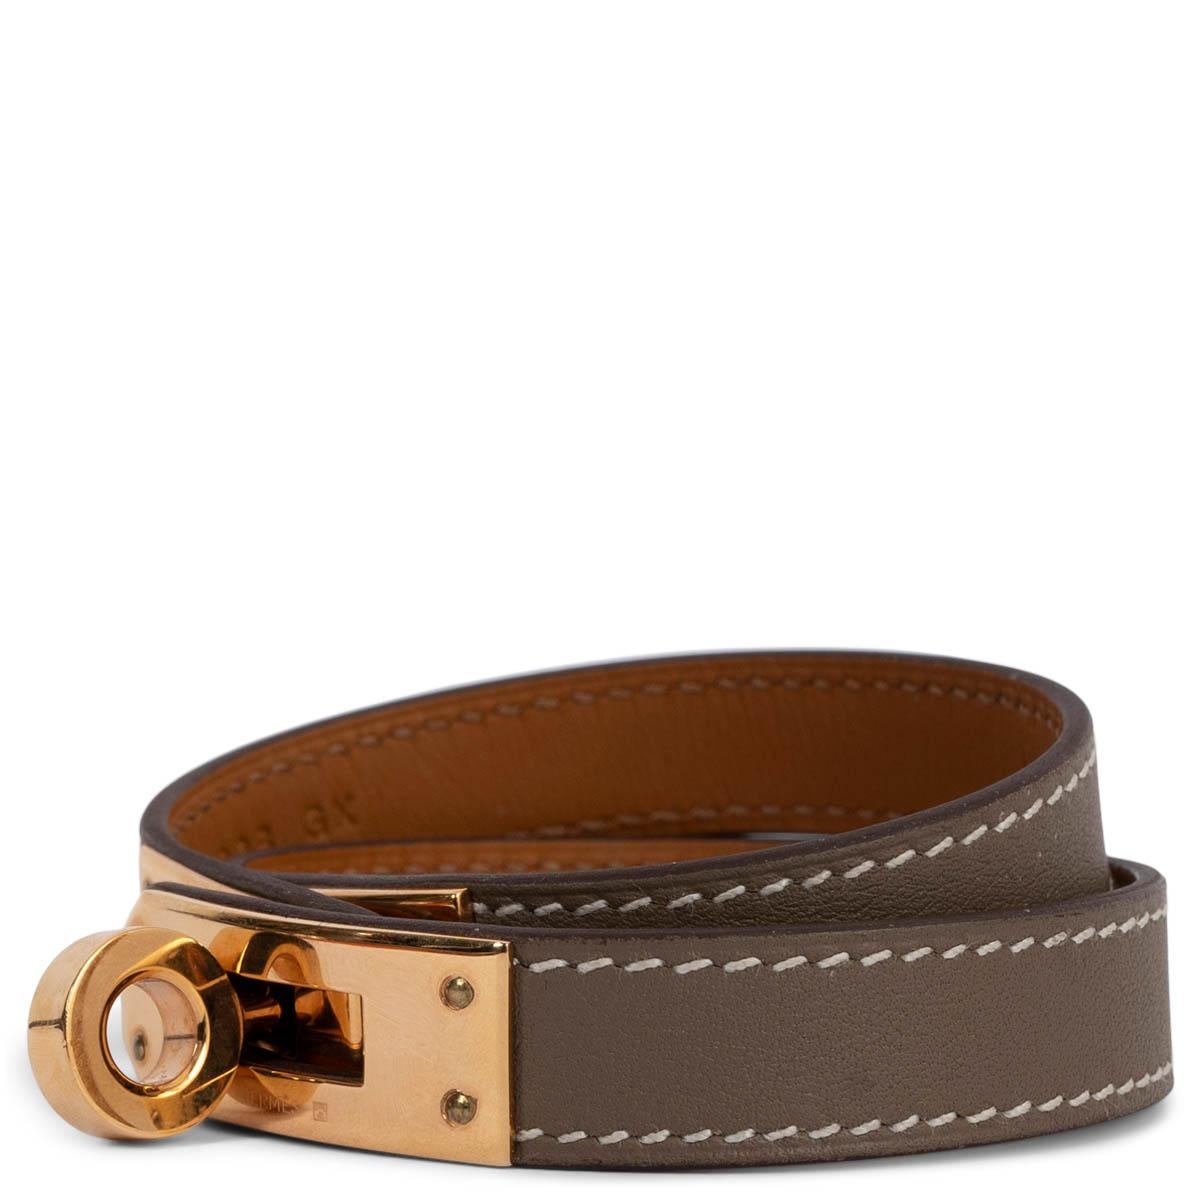 100% authentisches Hermès Kelly Double Tour Armband aus Etoupe Swift Leder mit roségoldfarbenen Beschlägen. Wurde getragen und ist in ausgezeichnetem Zustand. Wird mit Box und Staubbeutel geliefert. 

Messungen
Tag Größe	T3
Größe	T3
Breite	1.2cm